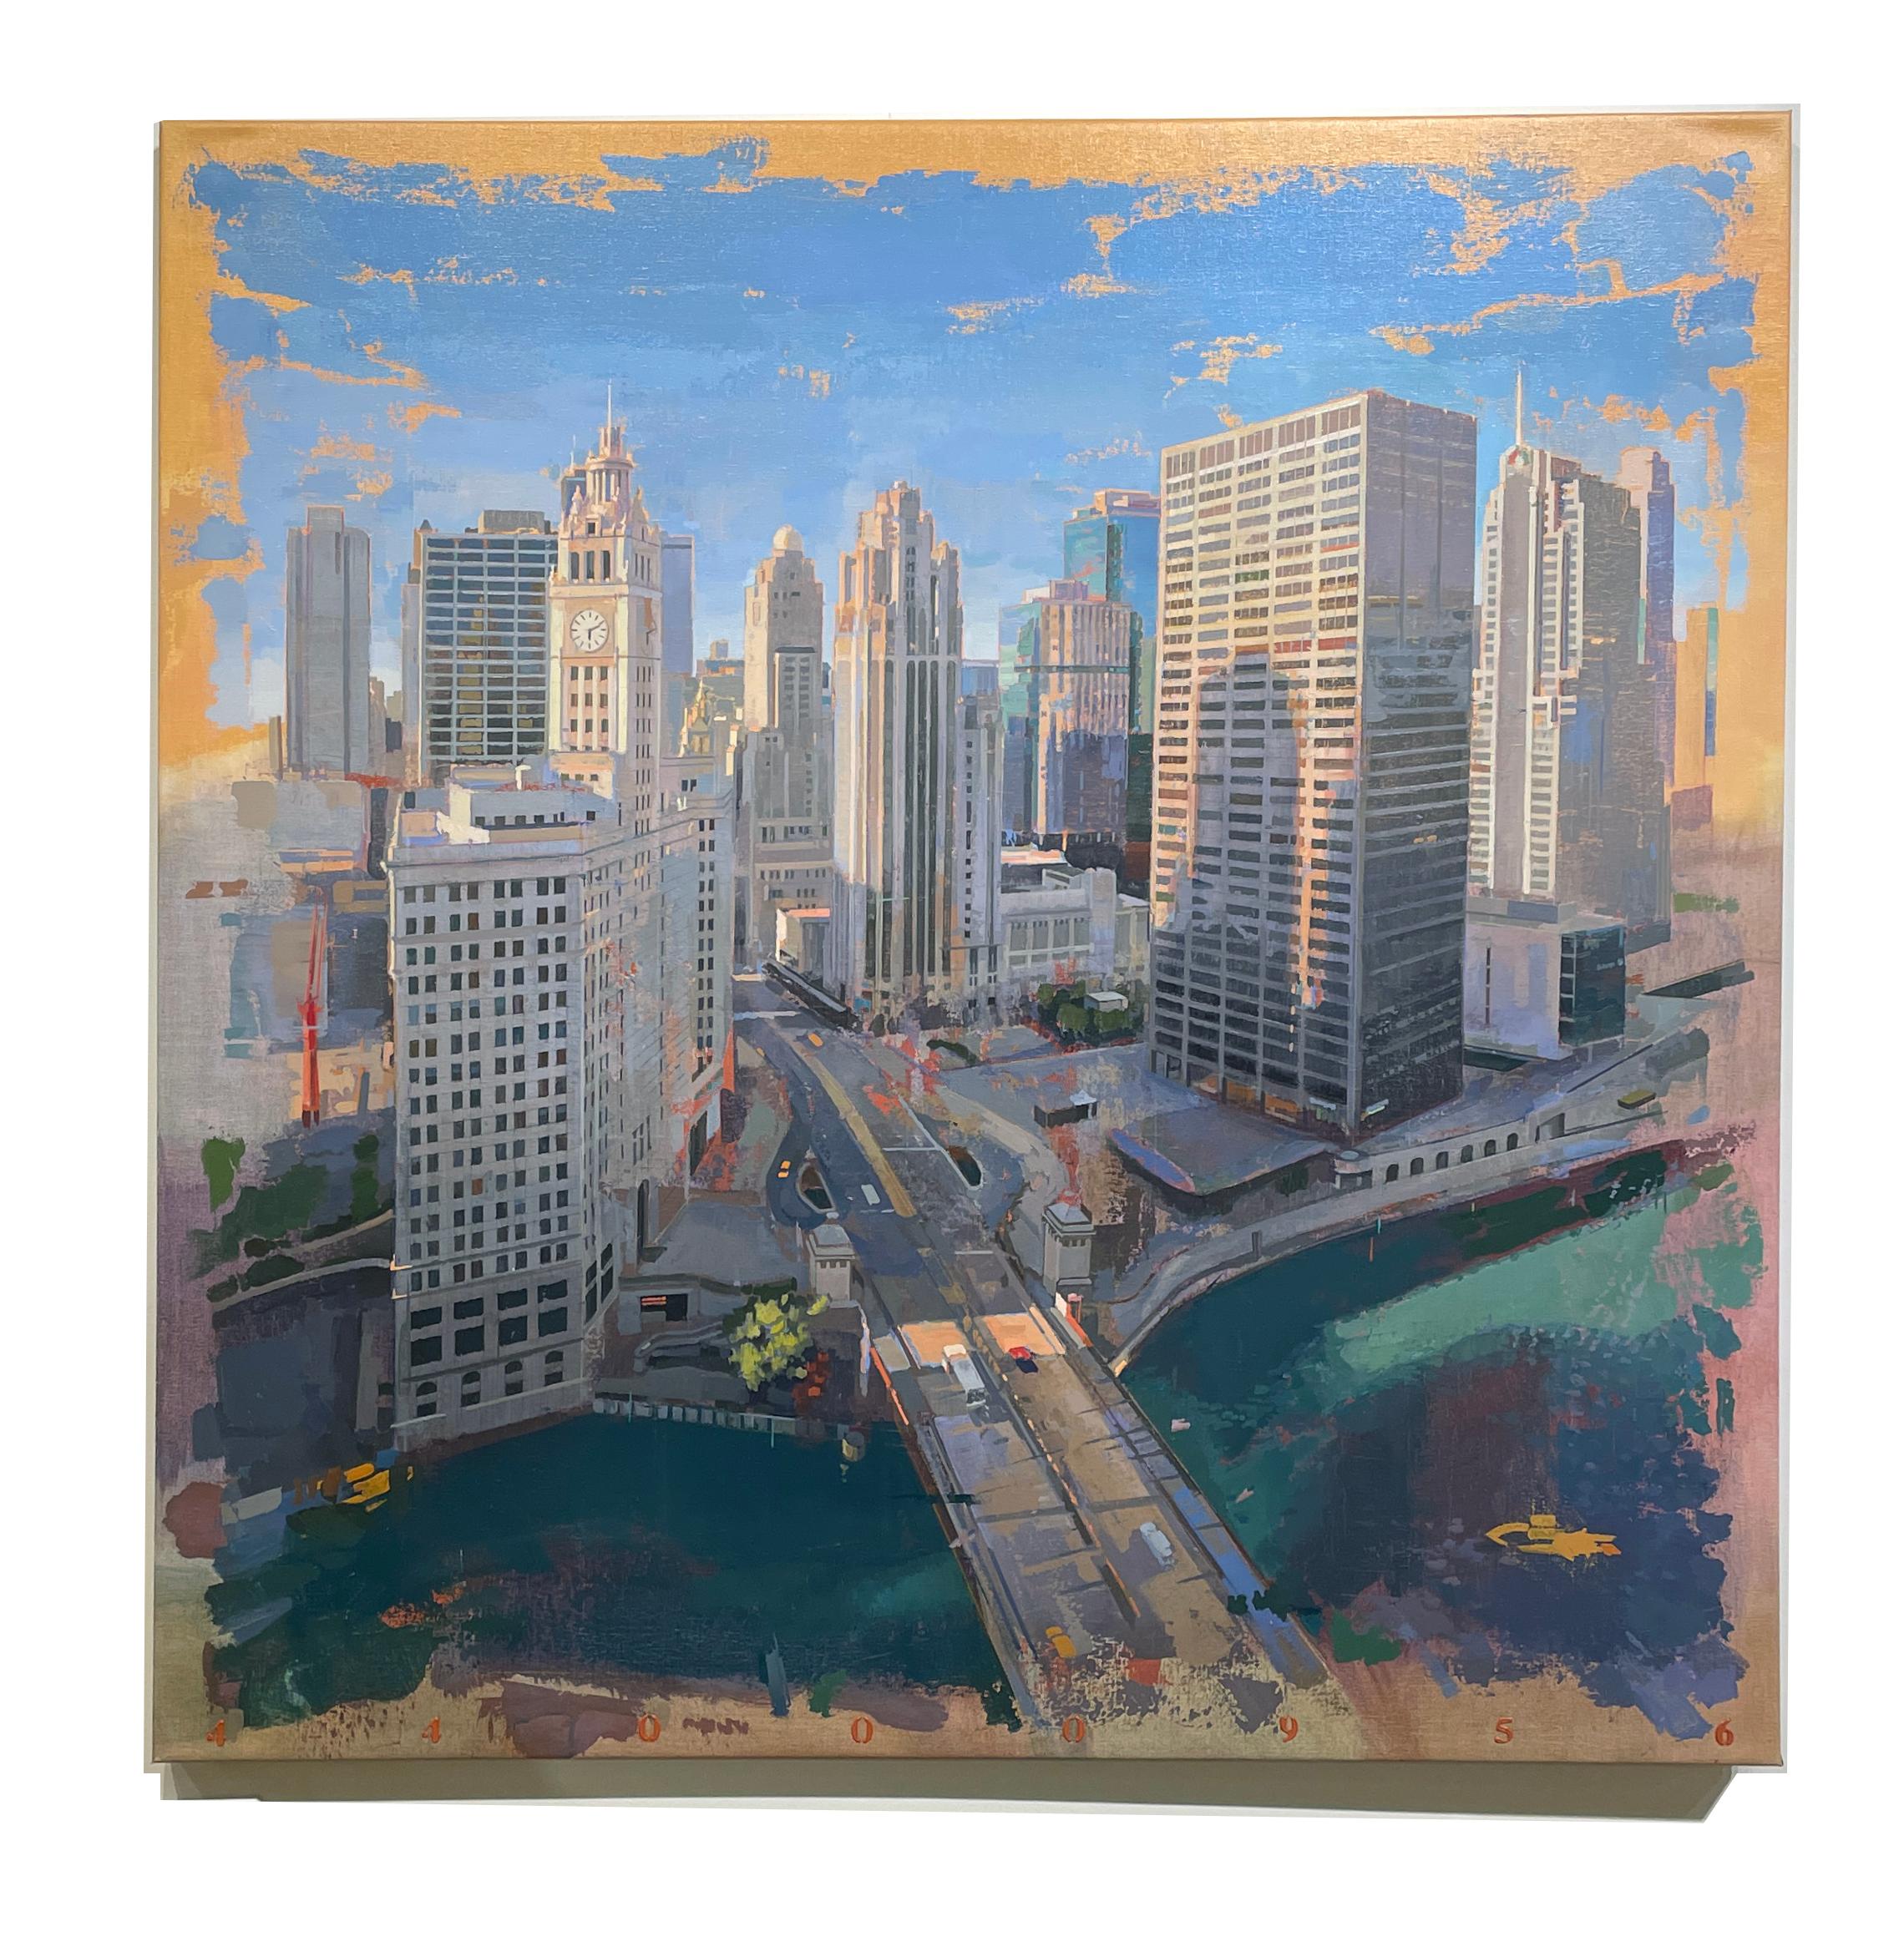 Chicago von London – Vogel-Eye- Ansicht aus dem London House Hotel, Chicago, IL – Painting von Albert Vidal Moreno